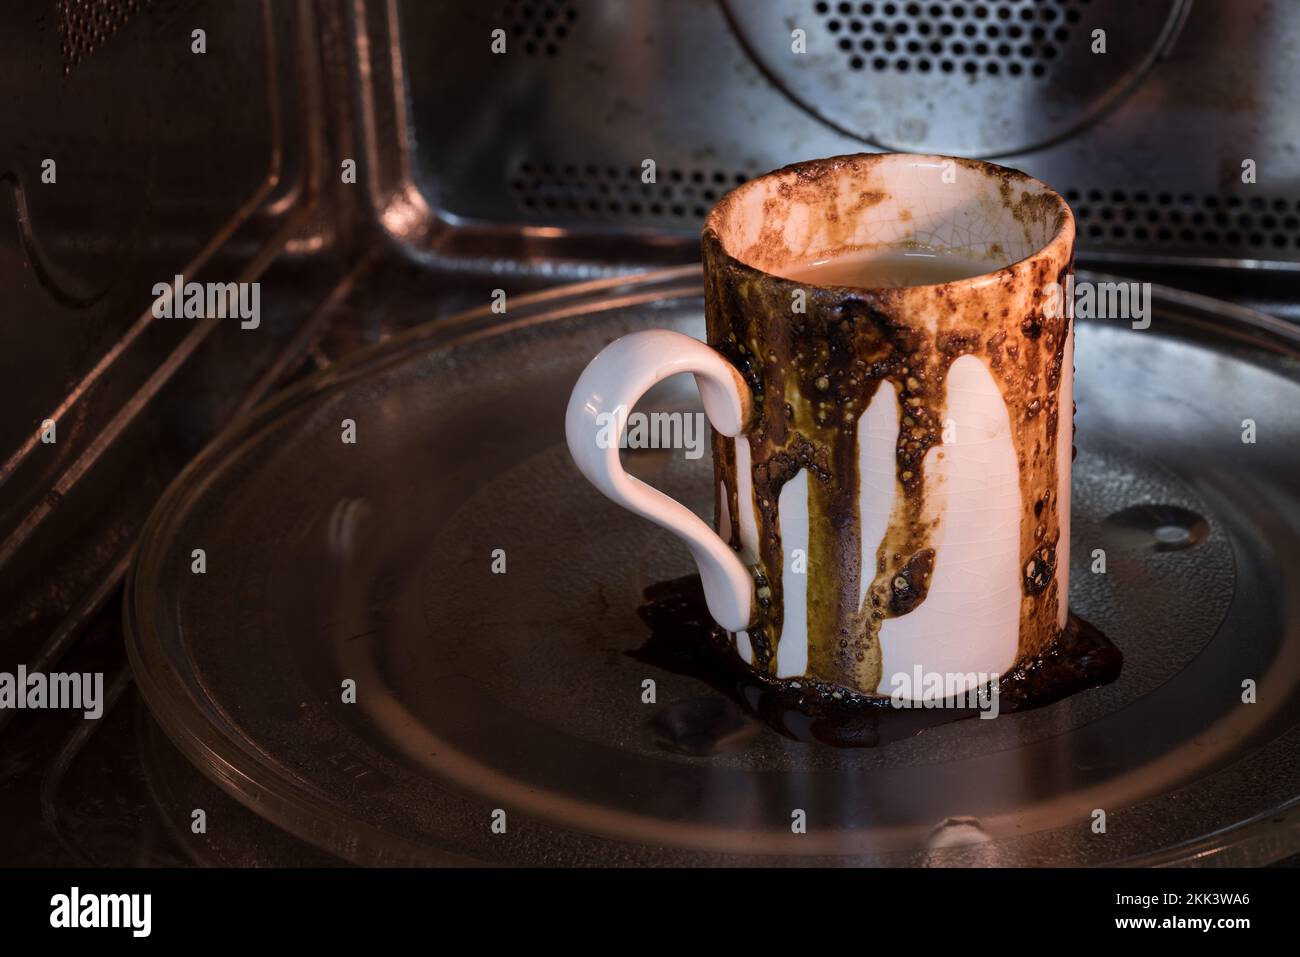 Le café débordé renversé dans le micro-ondes, ce qui a causé de graves dégâts à nettoyer comme oublié et a mis sur le mauvais réglage jonglant trop de choses en multitâche Banque D'Images